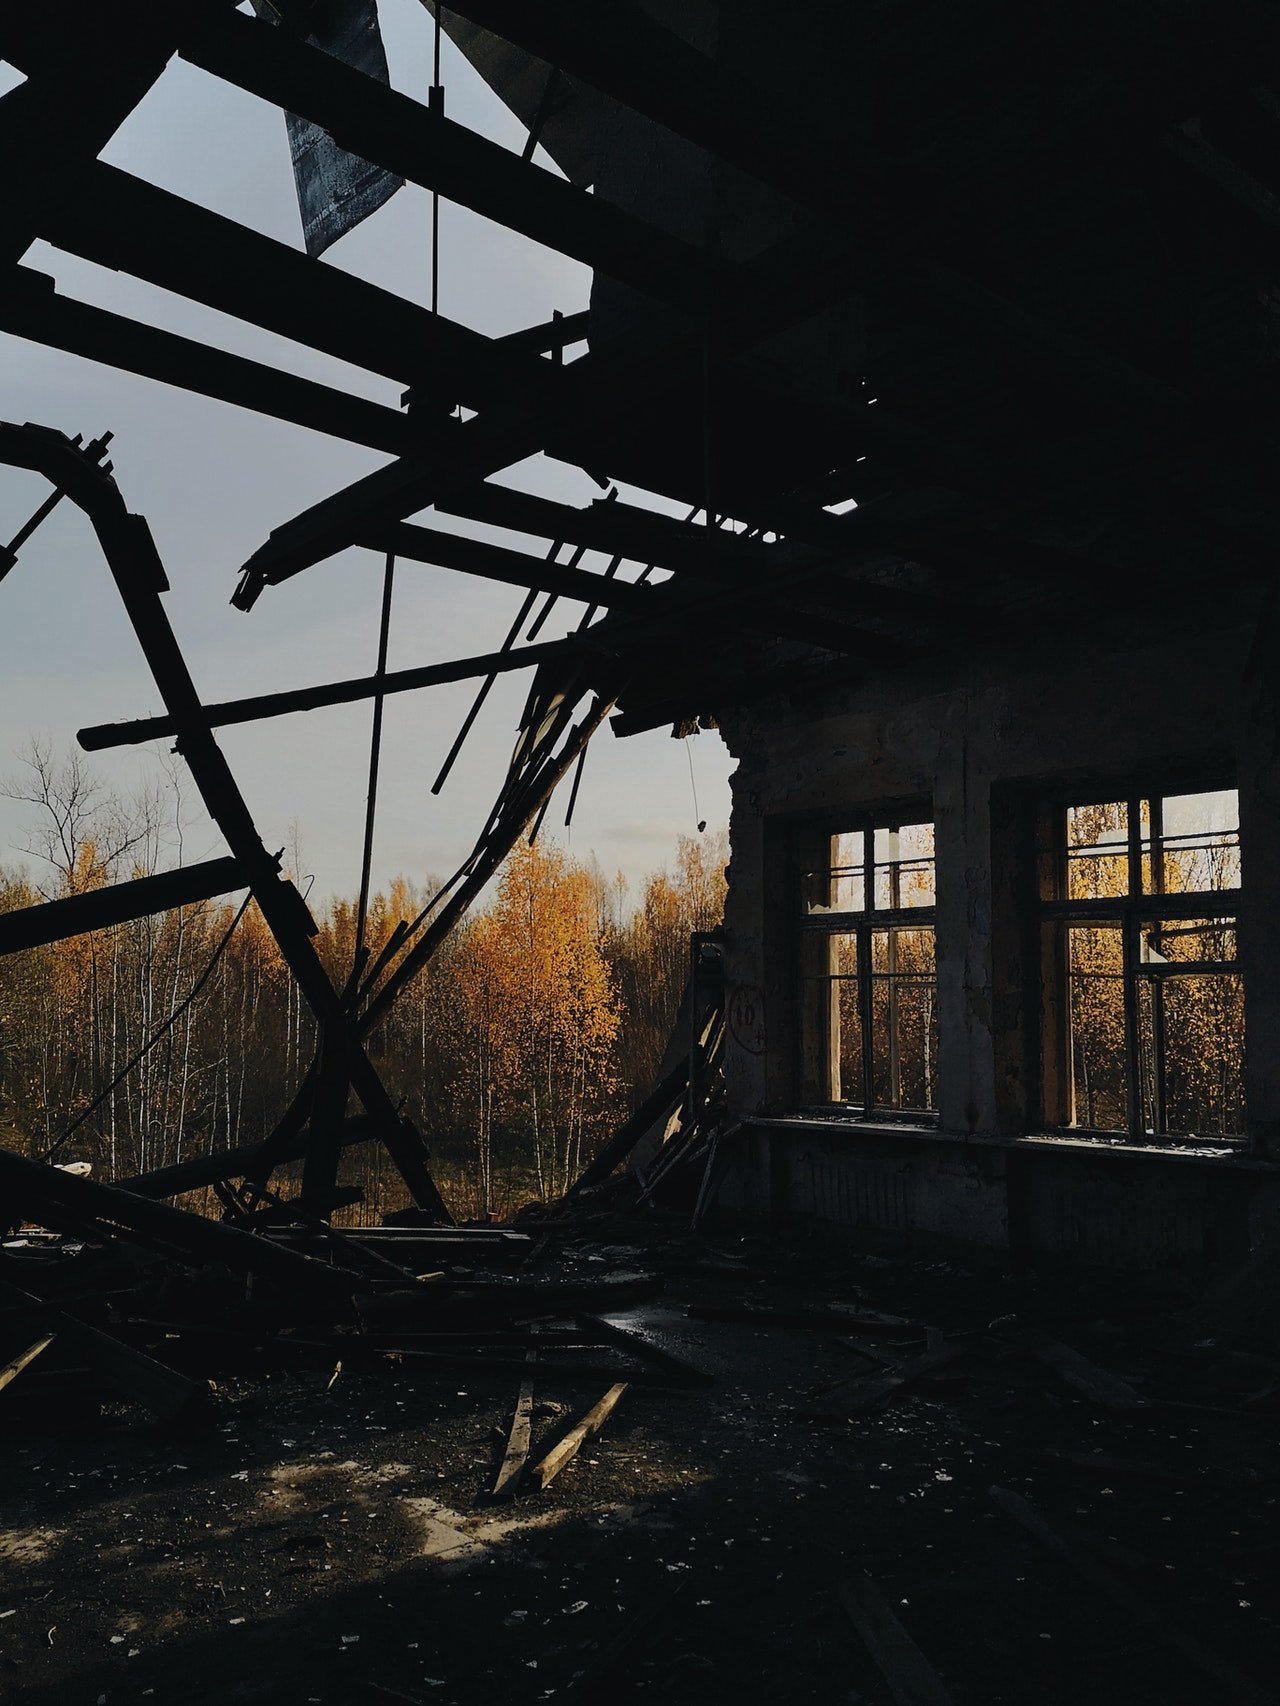 Les ouvriers du bâtiment ont démoli une partie de sa maison. | Source : Pexels